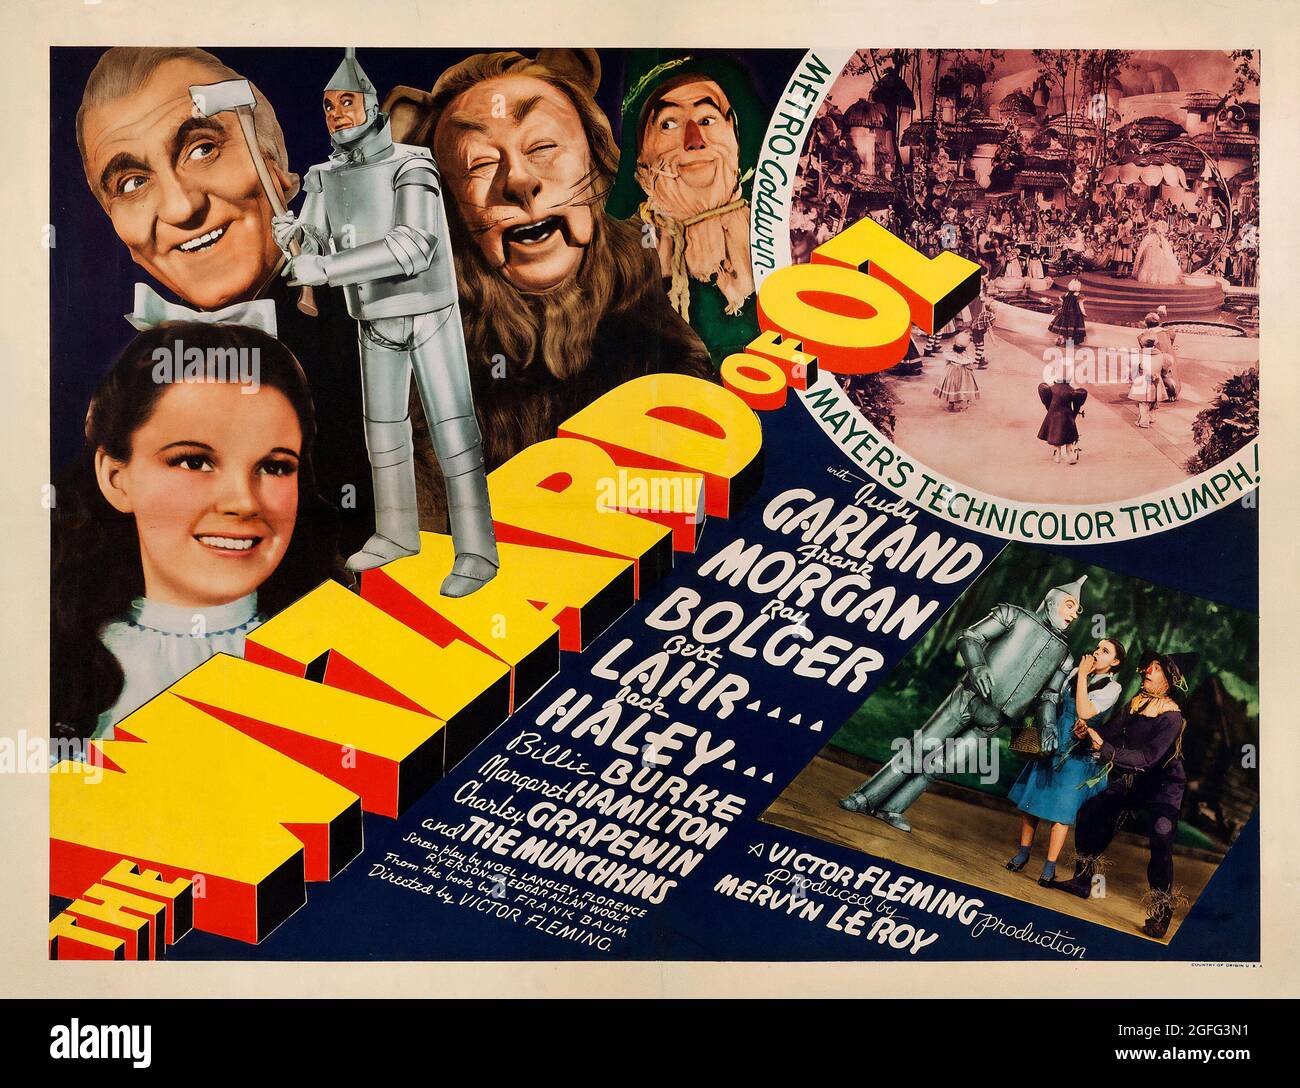 Poster del film: The Wizard of Oz è un film americano di fantasia musicale del 1939 con Judy Garland, Frank Morgan, Ray Bolger e Bert Lahr. Foto Stock